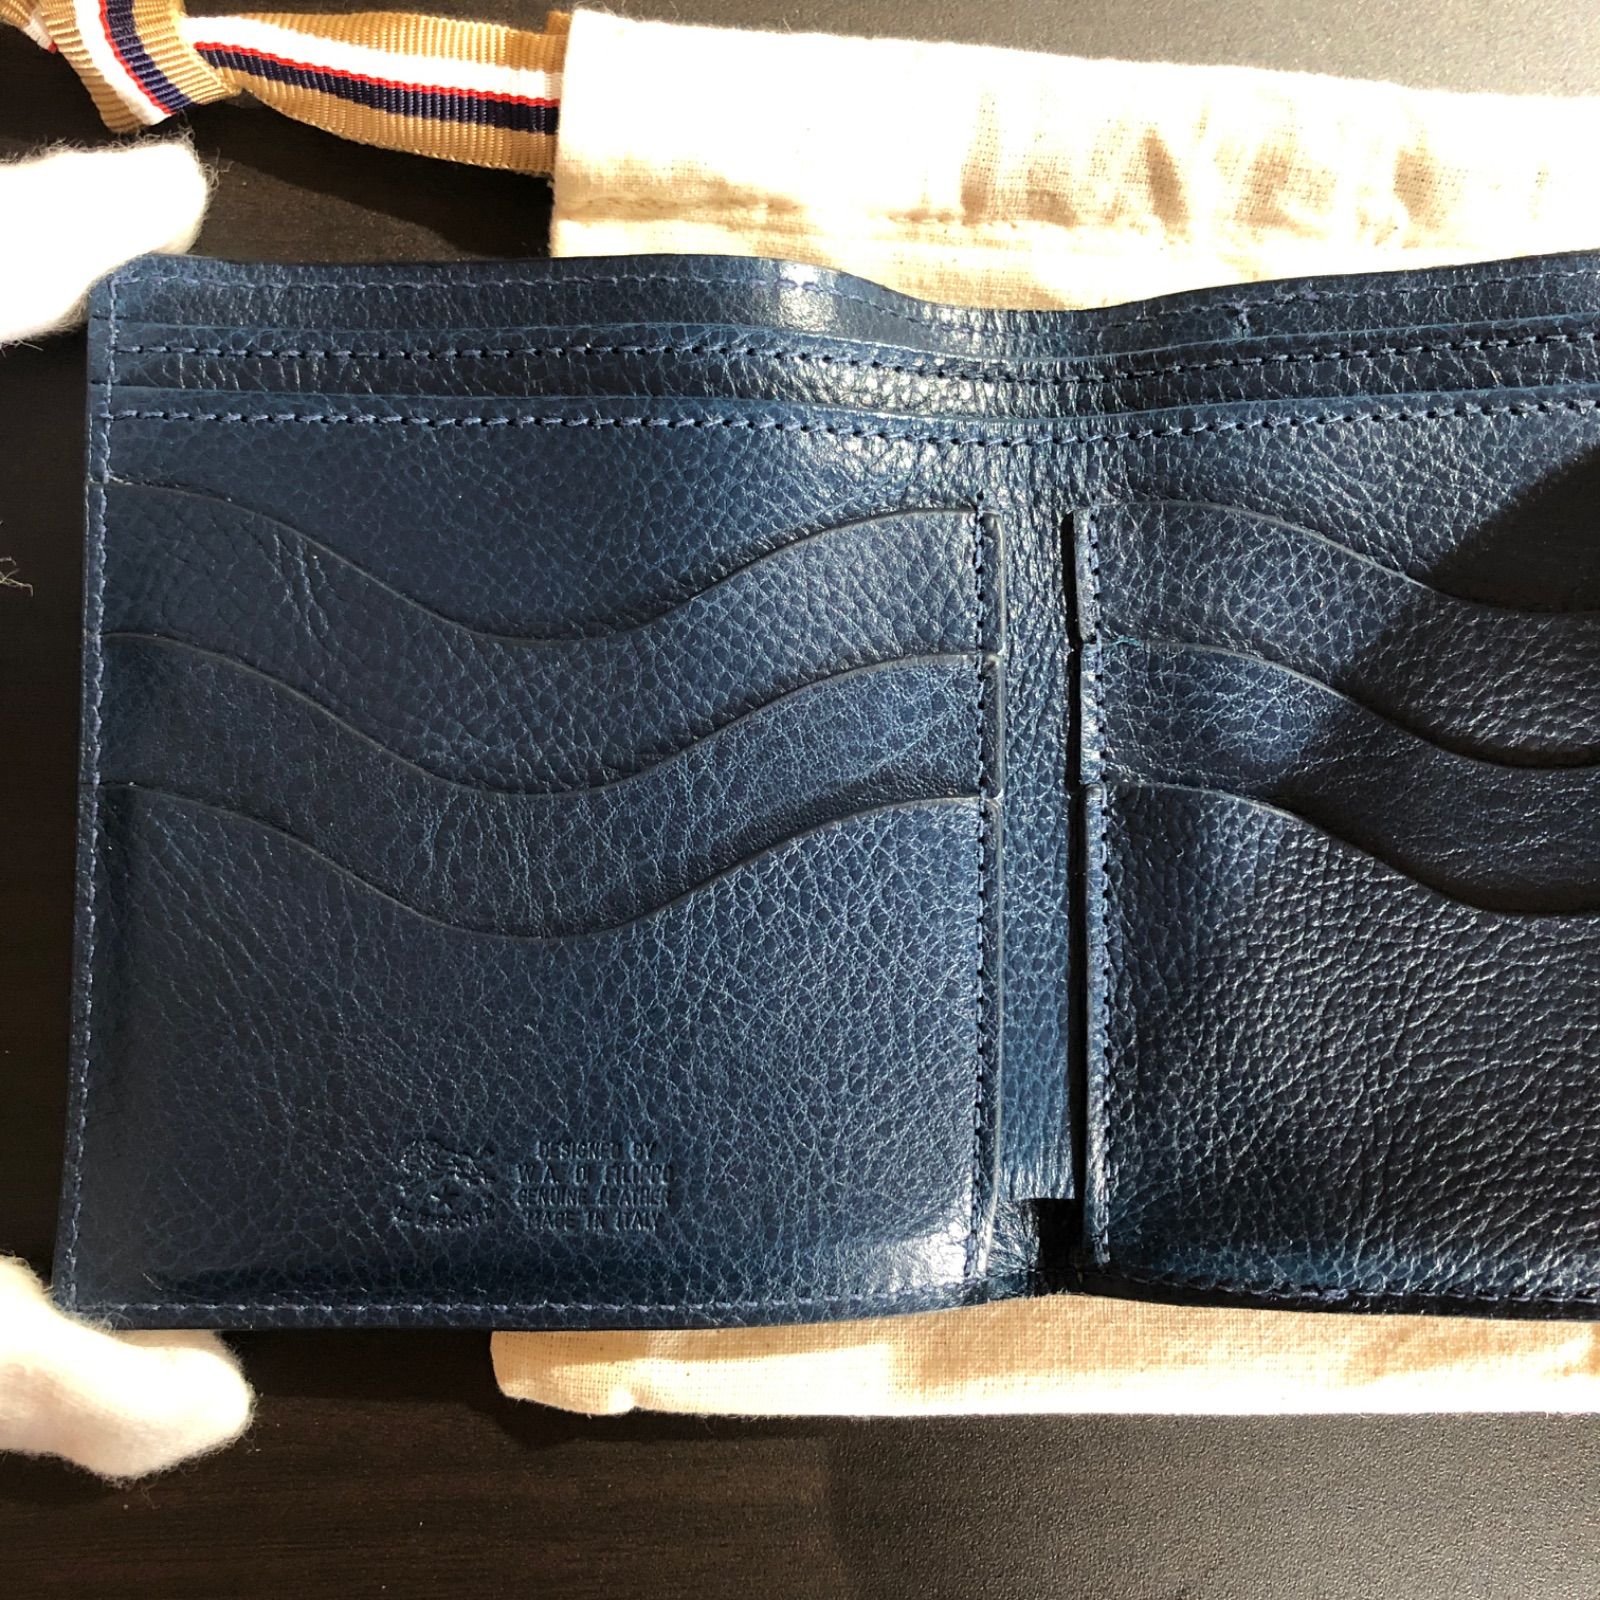 新品未使用 イルビゾンテ 二つ折り財布 ズッケロ カータ ブルー